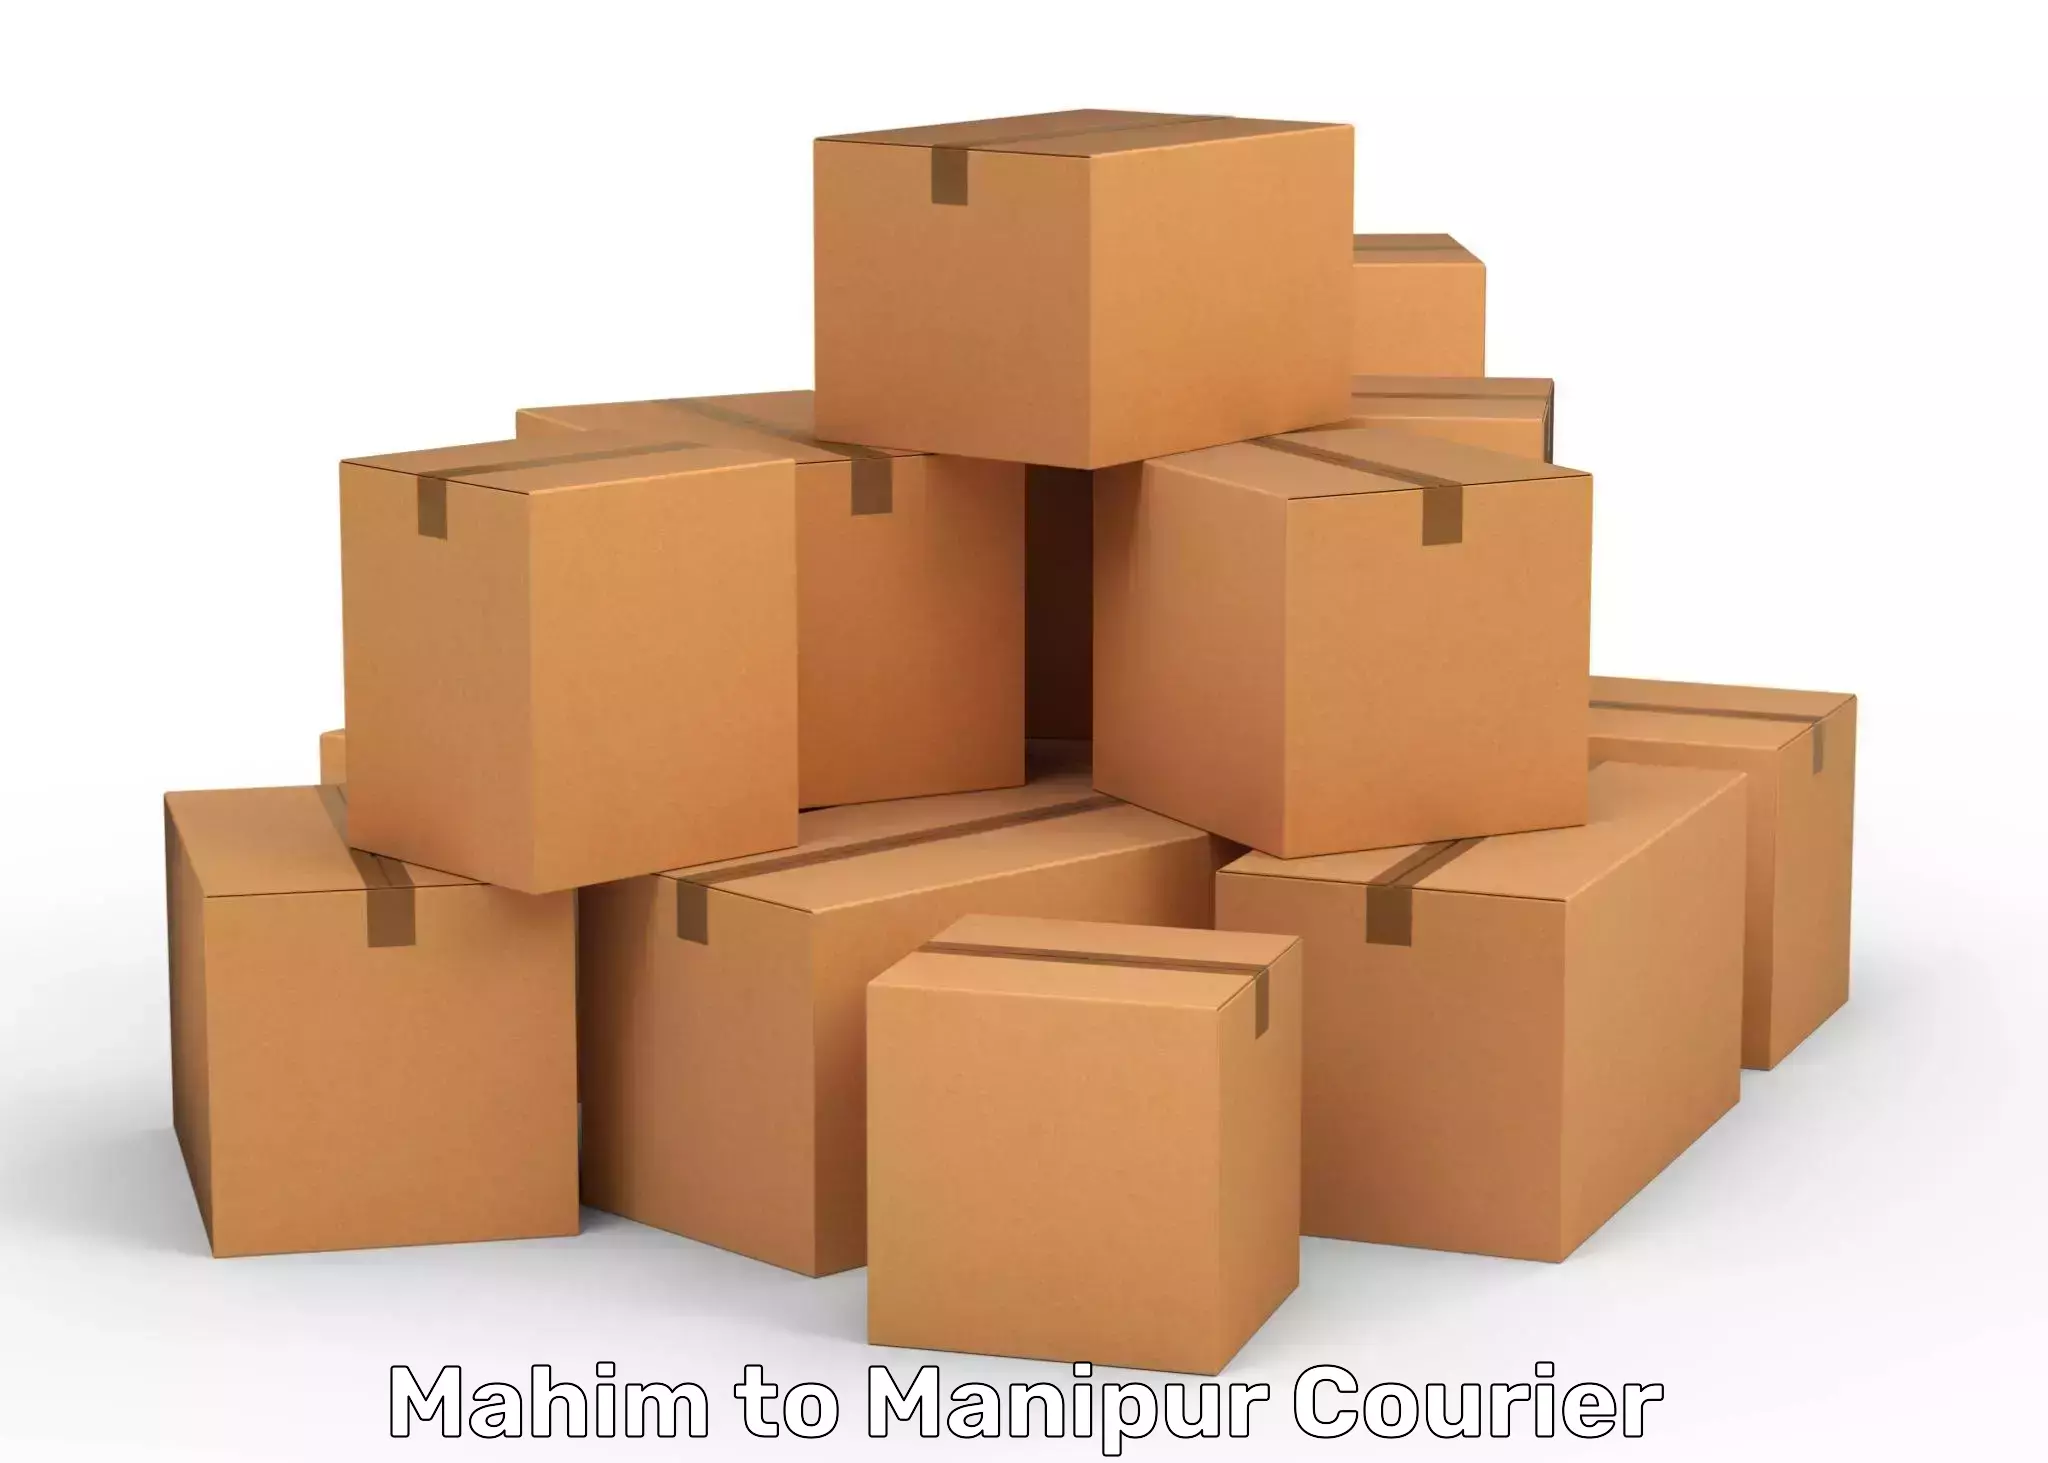 High-capacity parcel service Mahim to NIT Manipur